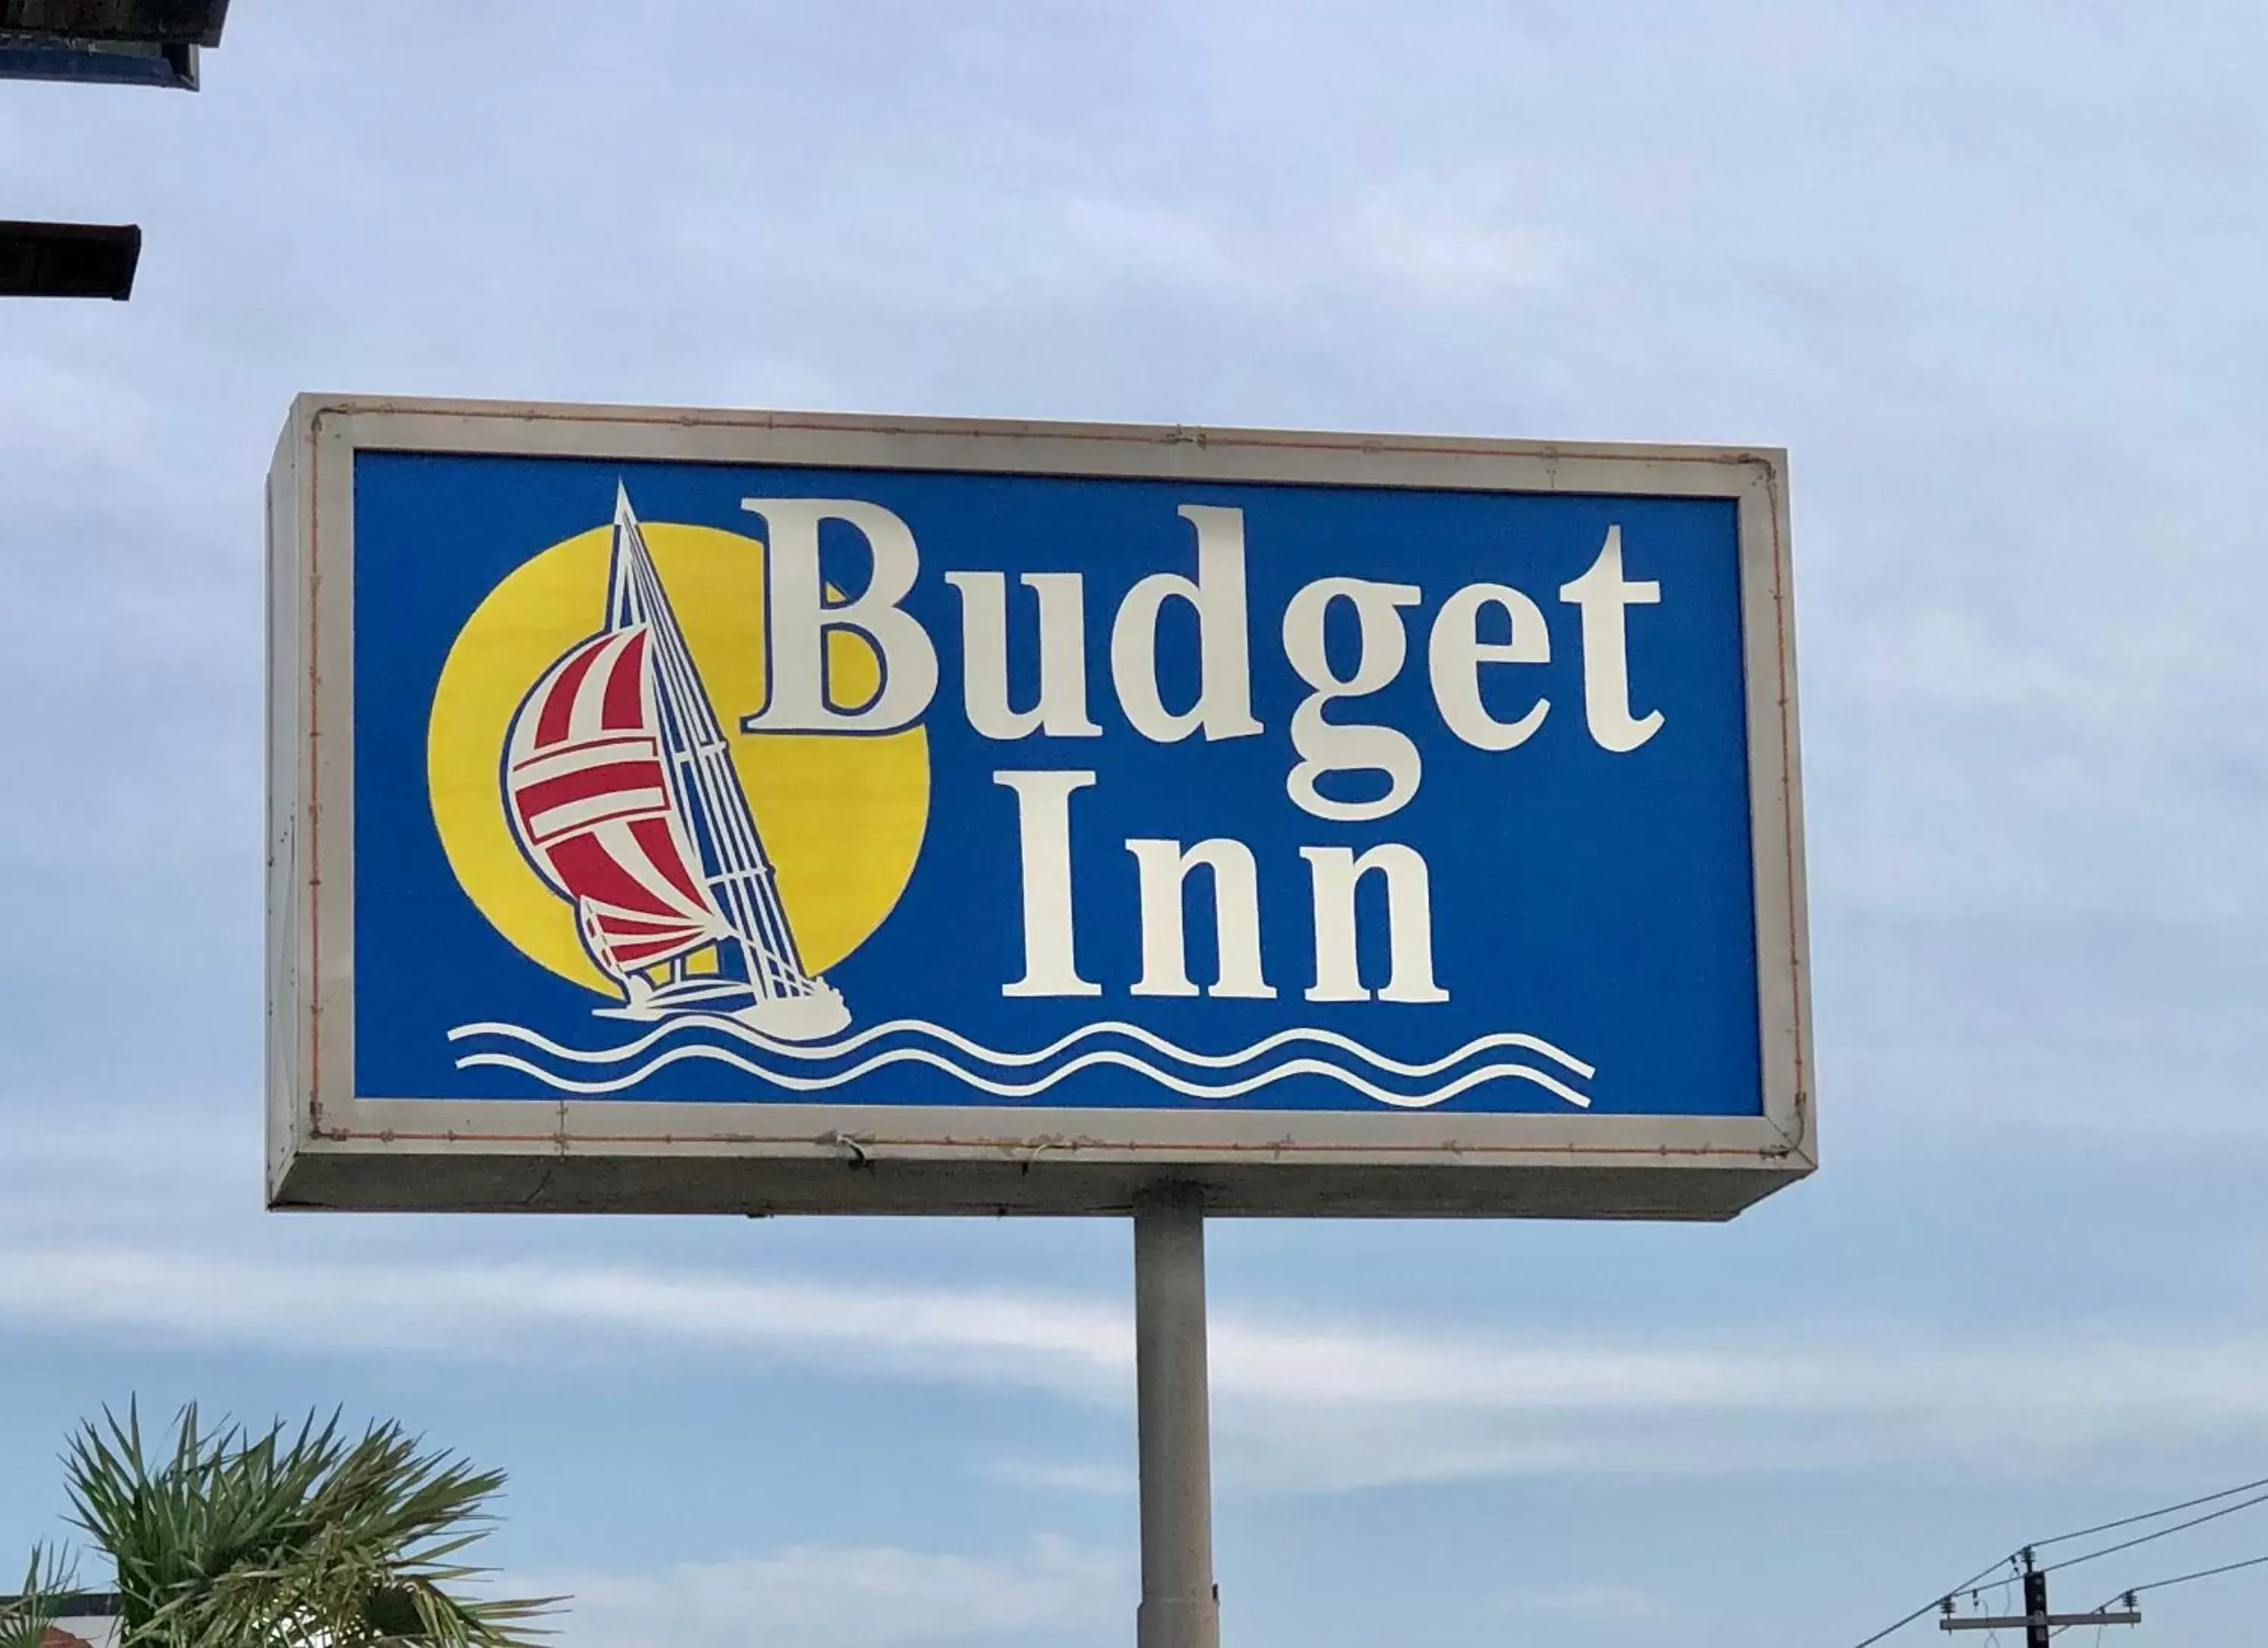 Budget inn